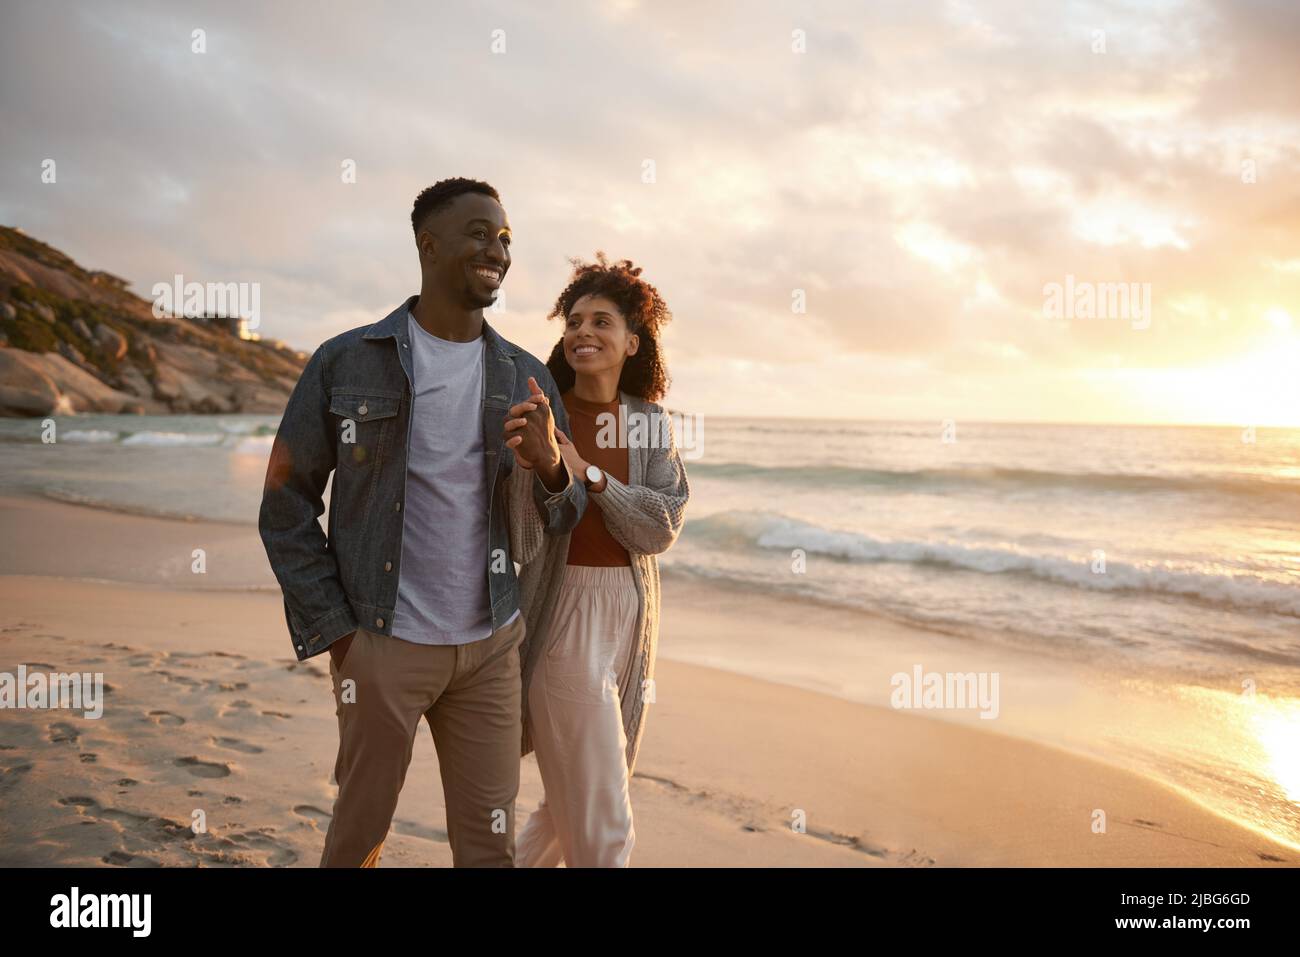 Sonriendo joven pareja multiétnica caminando a lo largo de una playa al atardecer Foto de stock